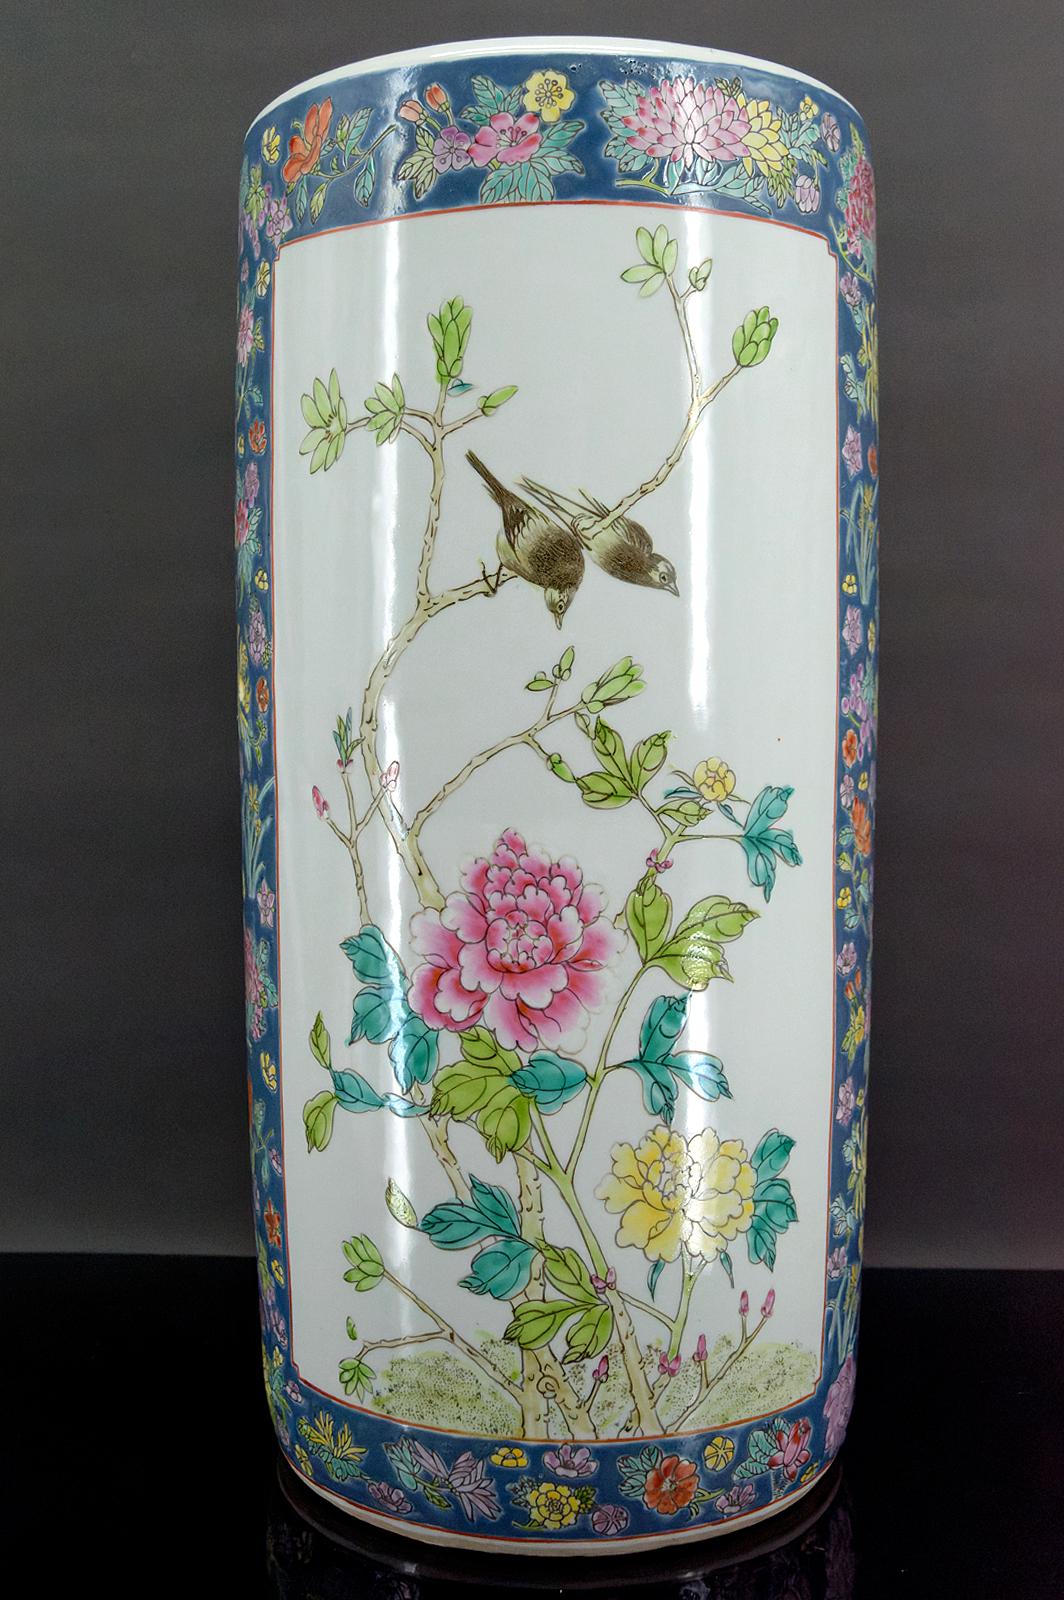 Wichtige Porzellanrolle / Rohr Vase mit polychromen Dekoration von Vögeln und Blumen.

China, späte Qing-Zeit, frühes 20. Jahrhundert.

Ausgezeichneter Zustand.

Abmessungen:
Höhe 46 cm
Durchmesser 23 cm